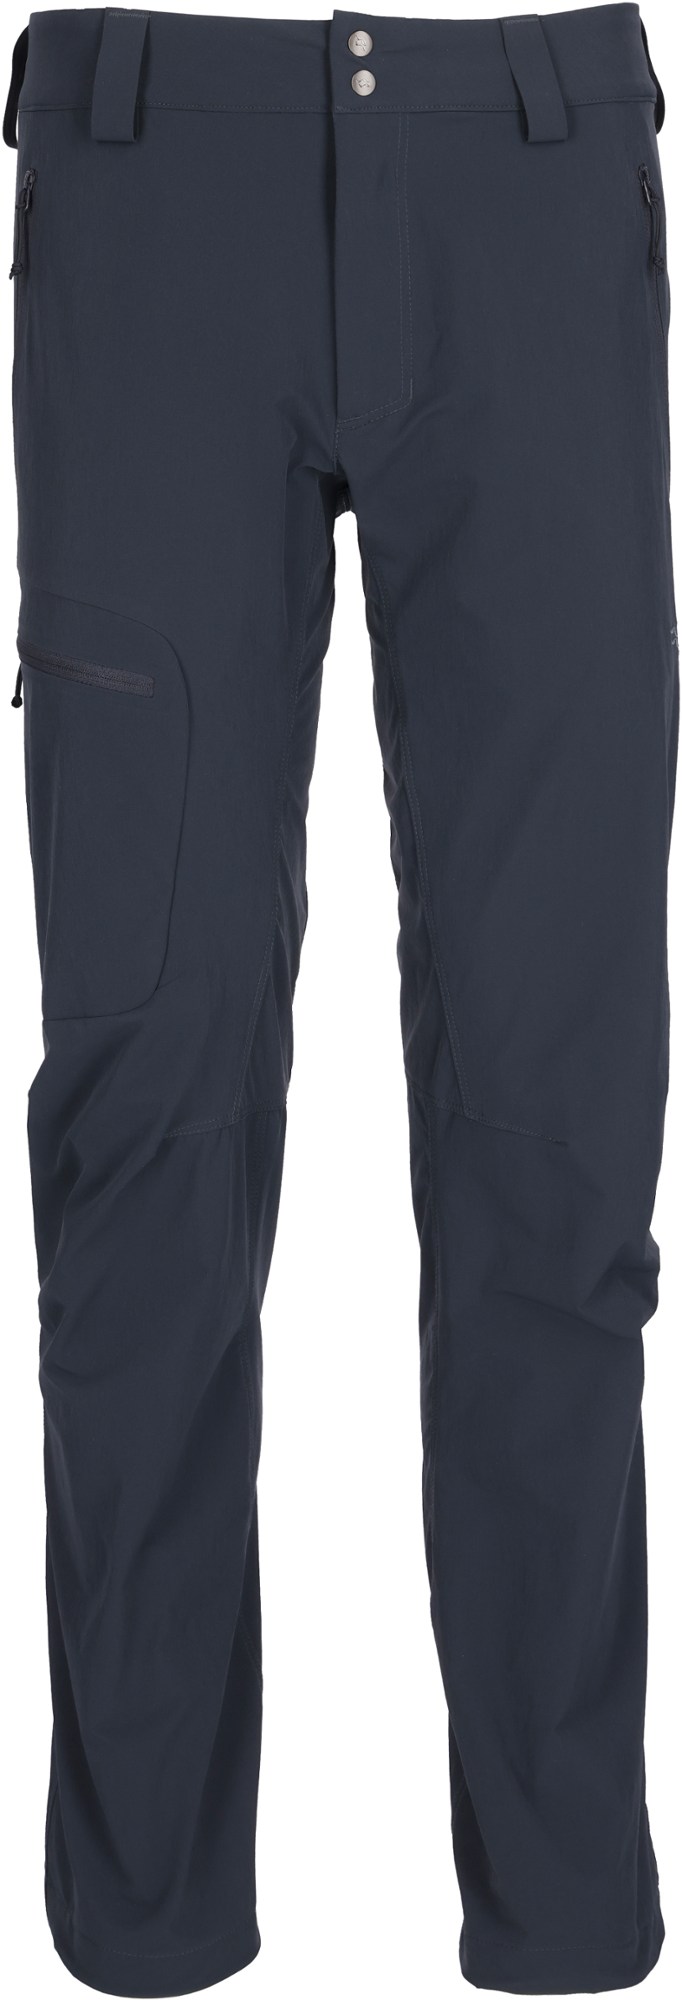 Наклонные брюки – мужские Rab, серый легкие брюки incline женские rab цвет anthracite